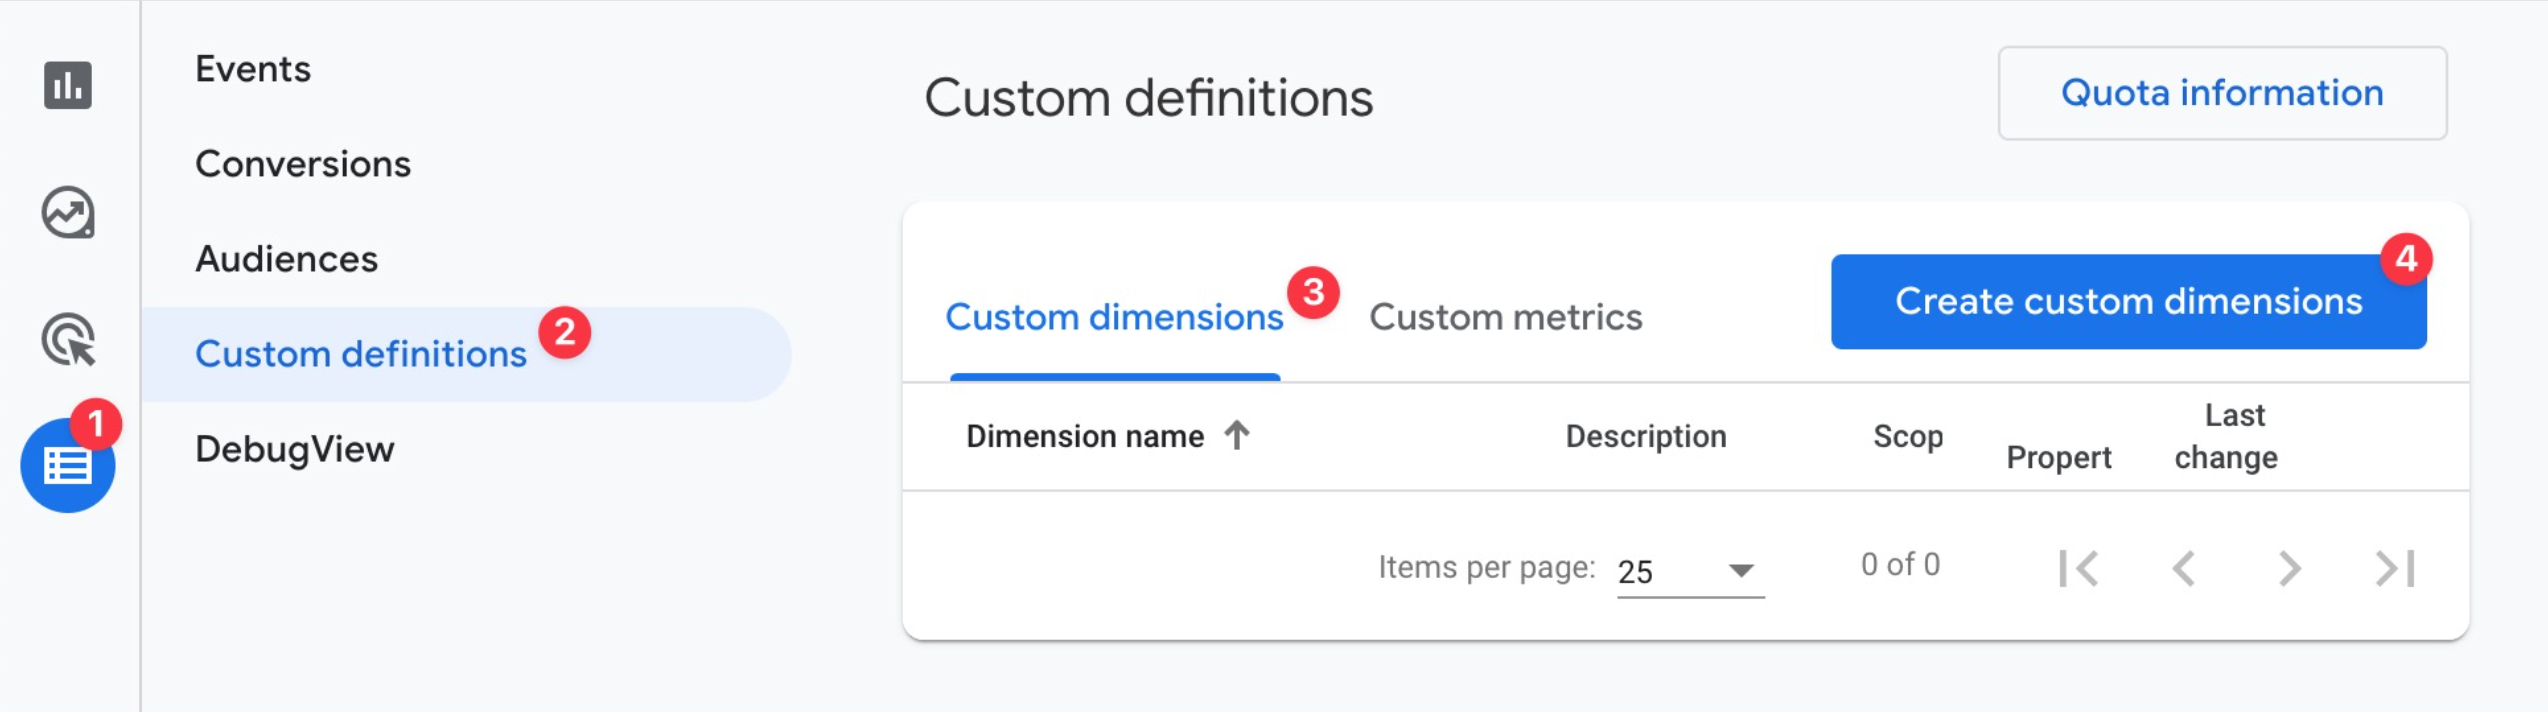 Configure custom dimensions